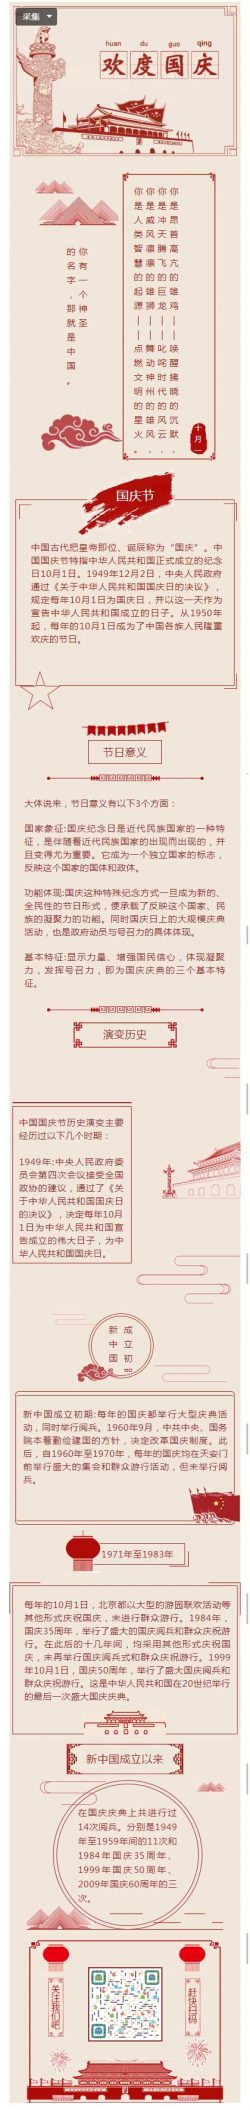 中国国庆节特指中华人民共和国正式成立的纪念日10月1日